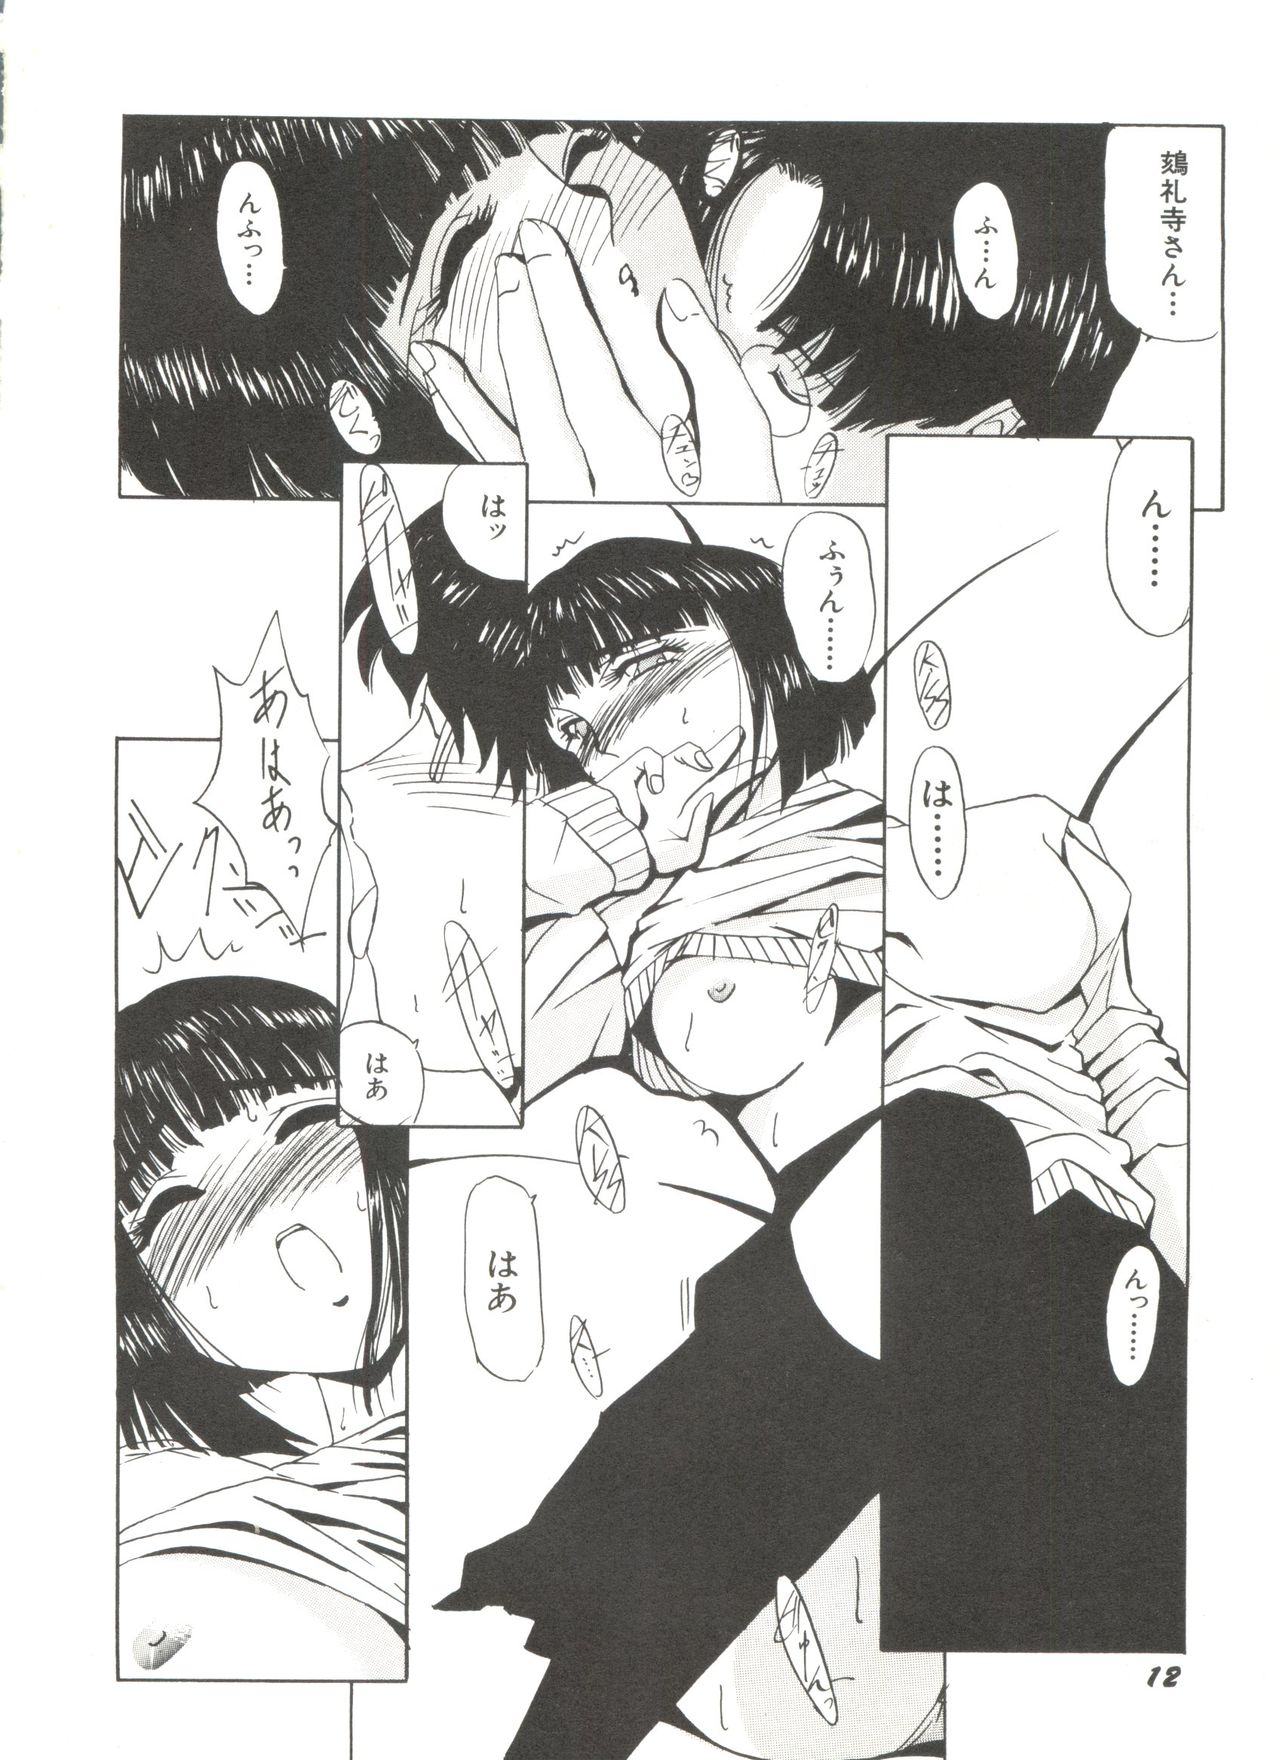 [Anthology] Bishoujo Doujinshi Anthology 4 (Various) page 16 full